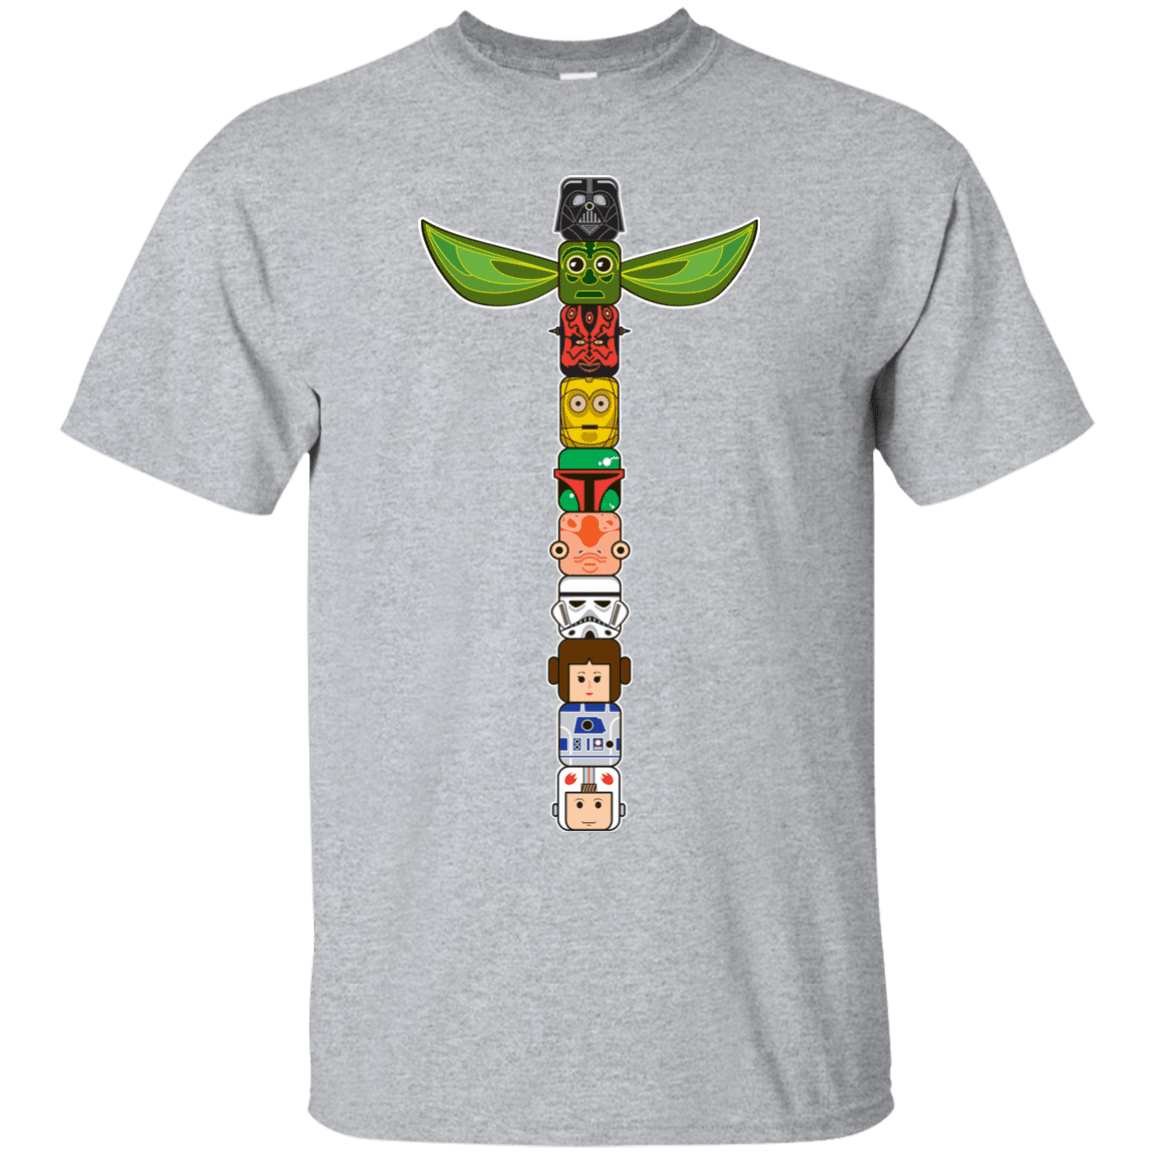 T-Shirts Sport Grey / Small Star Wars Totem T-Shirt